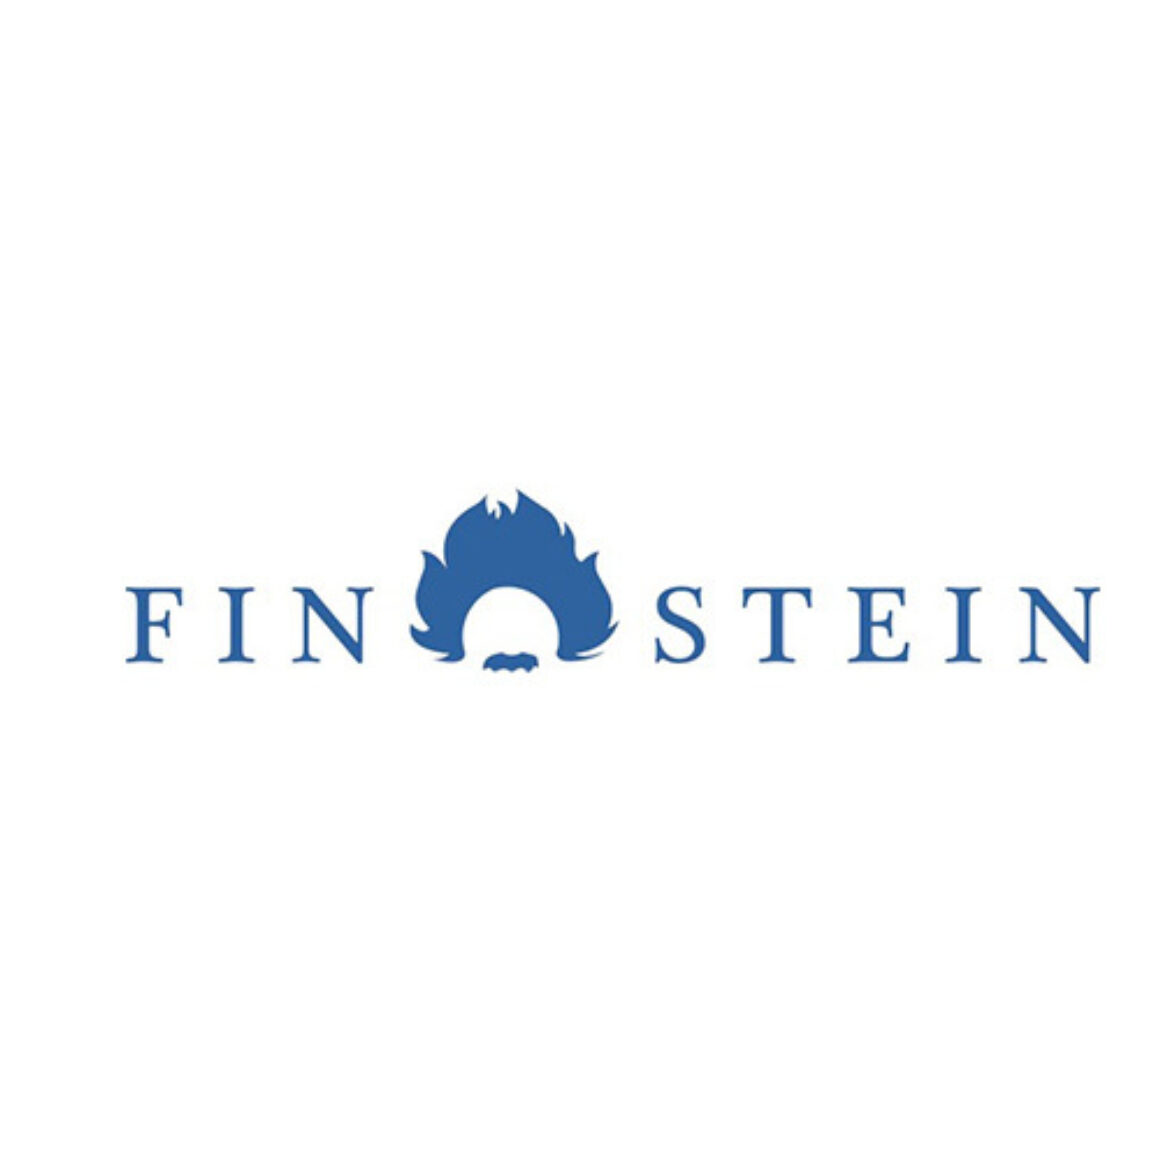 Finstein